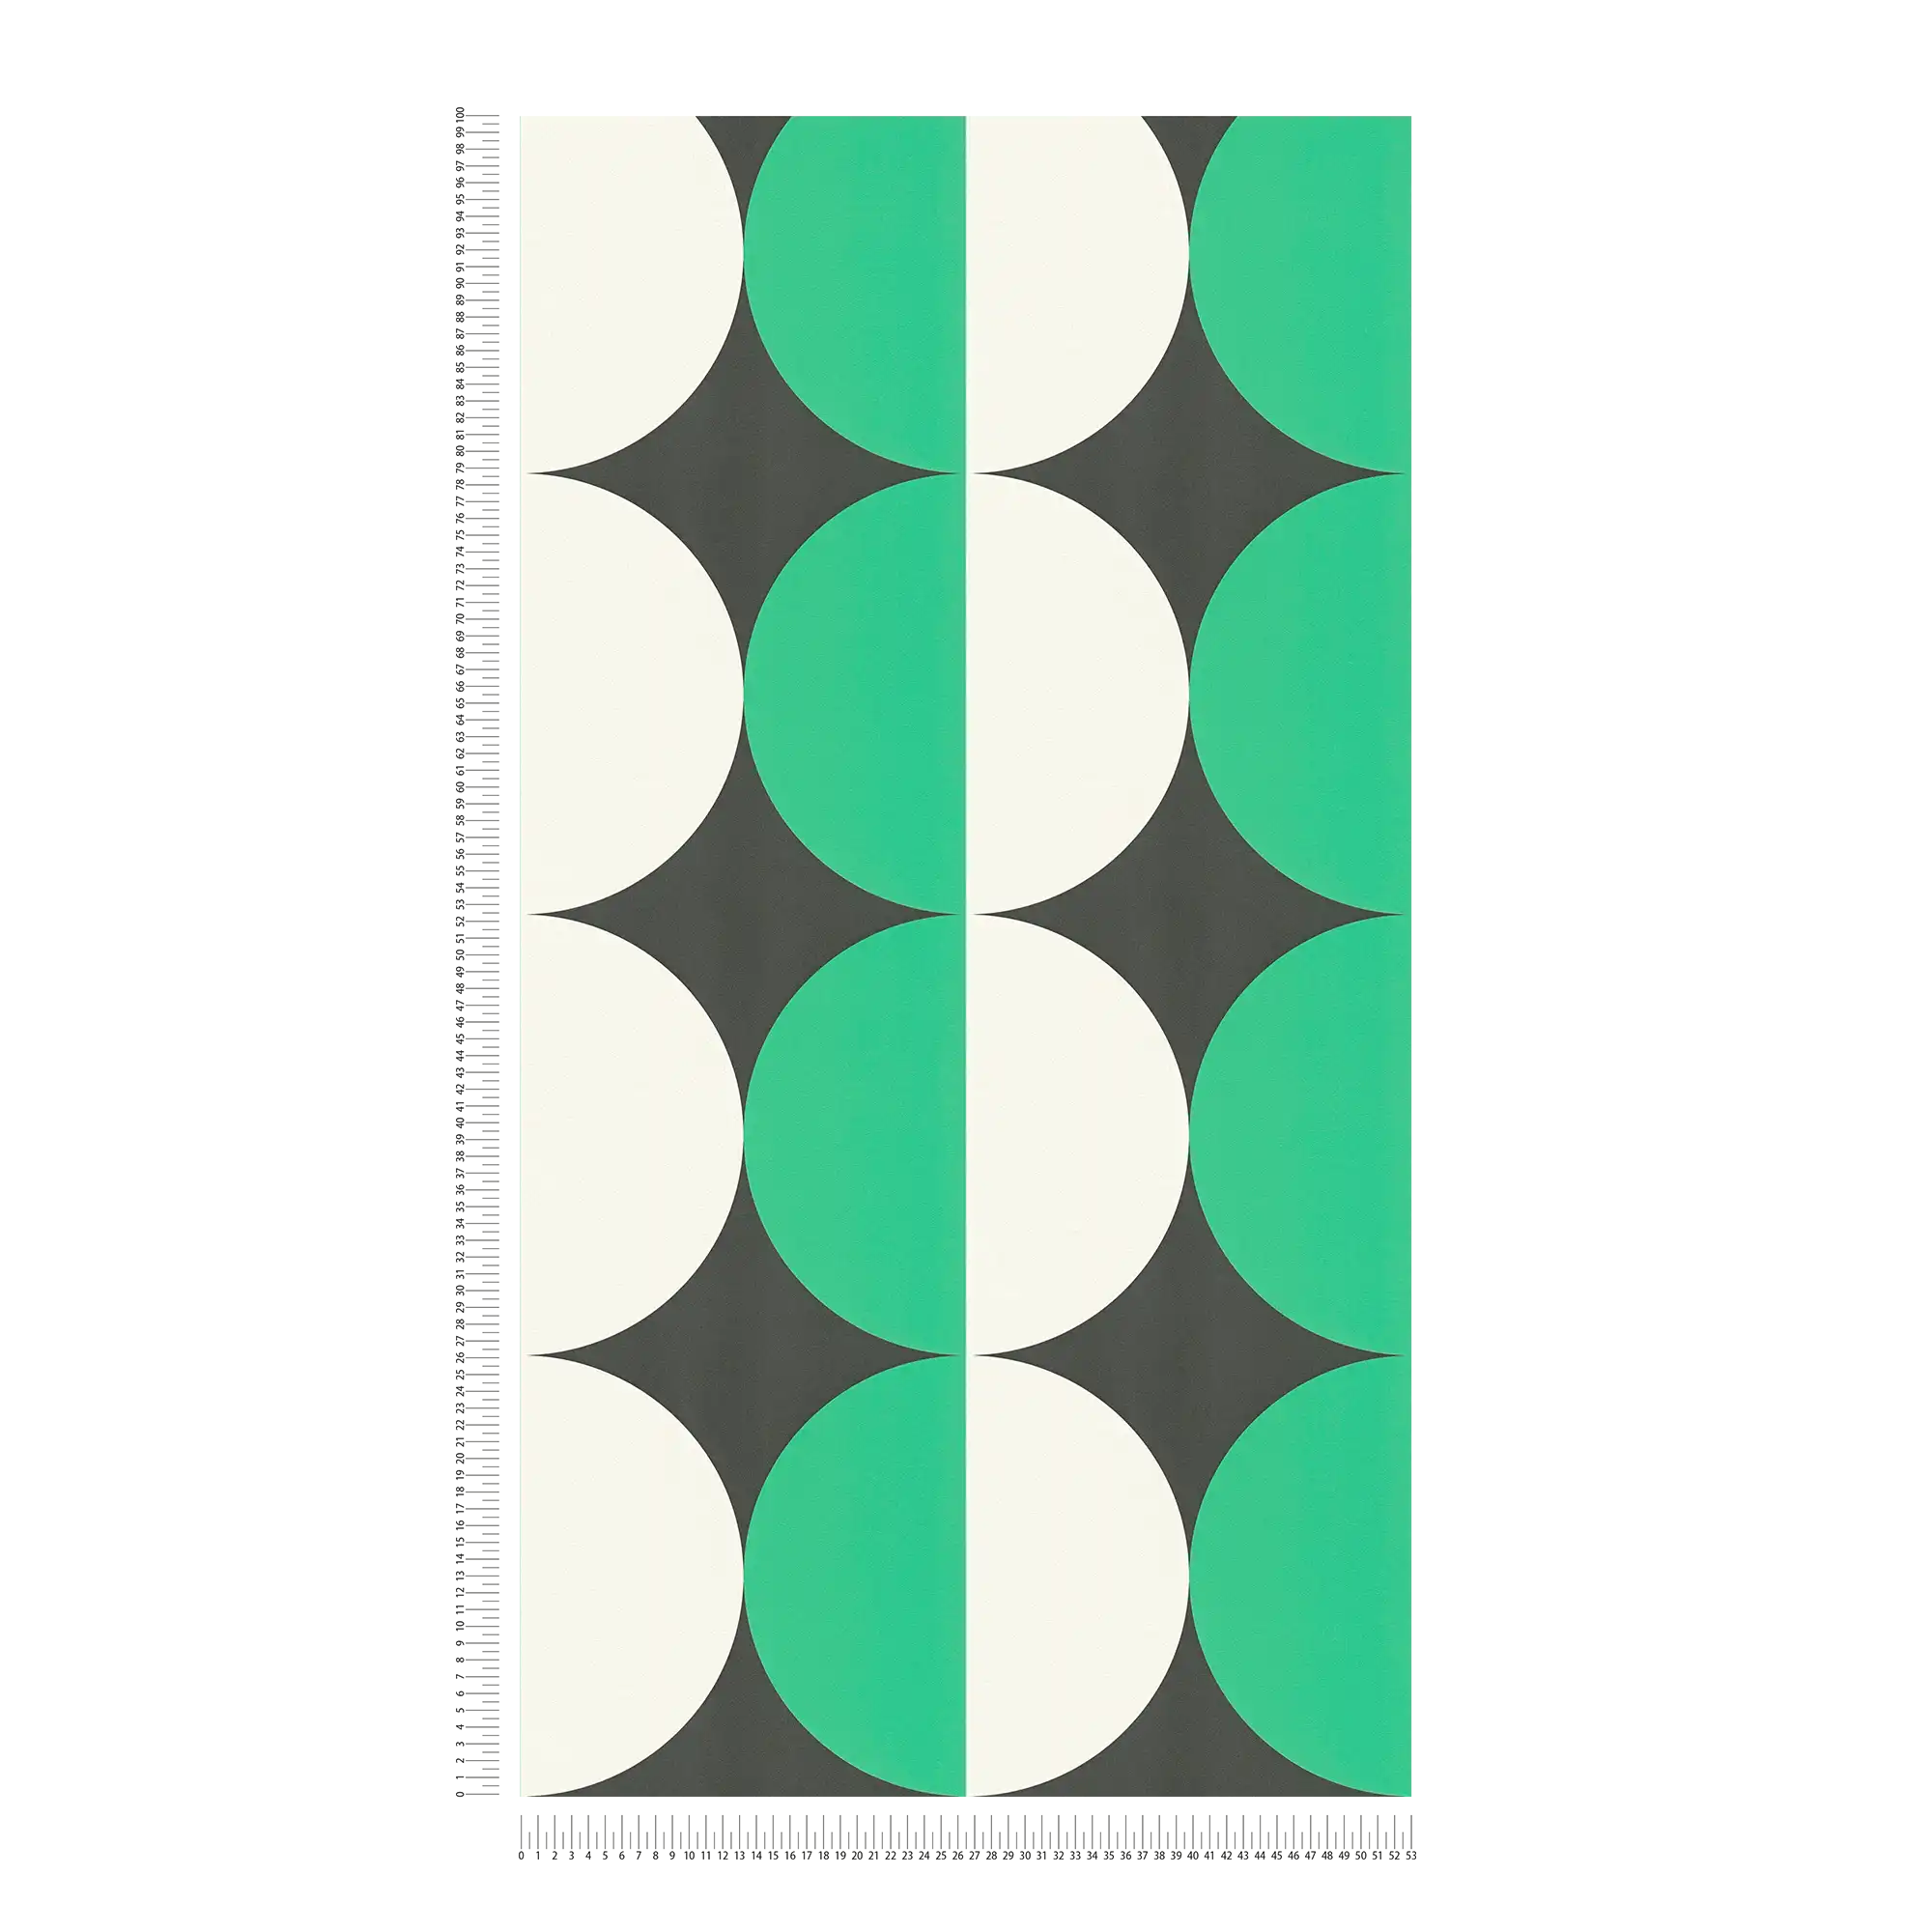             Papel pintado no tejido de estilo retro años 70 con motivos circulares - verde, blanco, negro
        